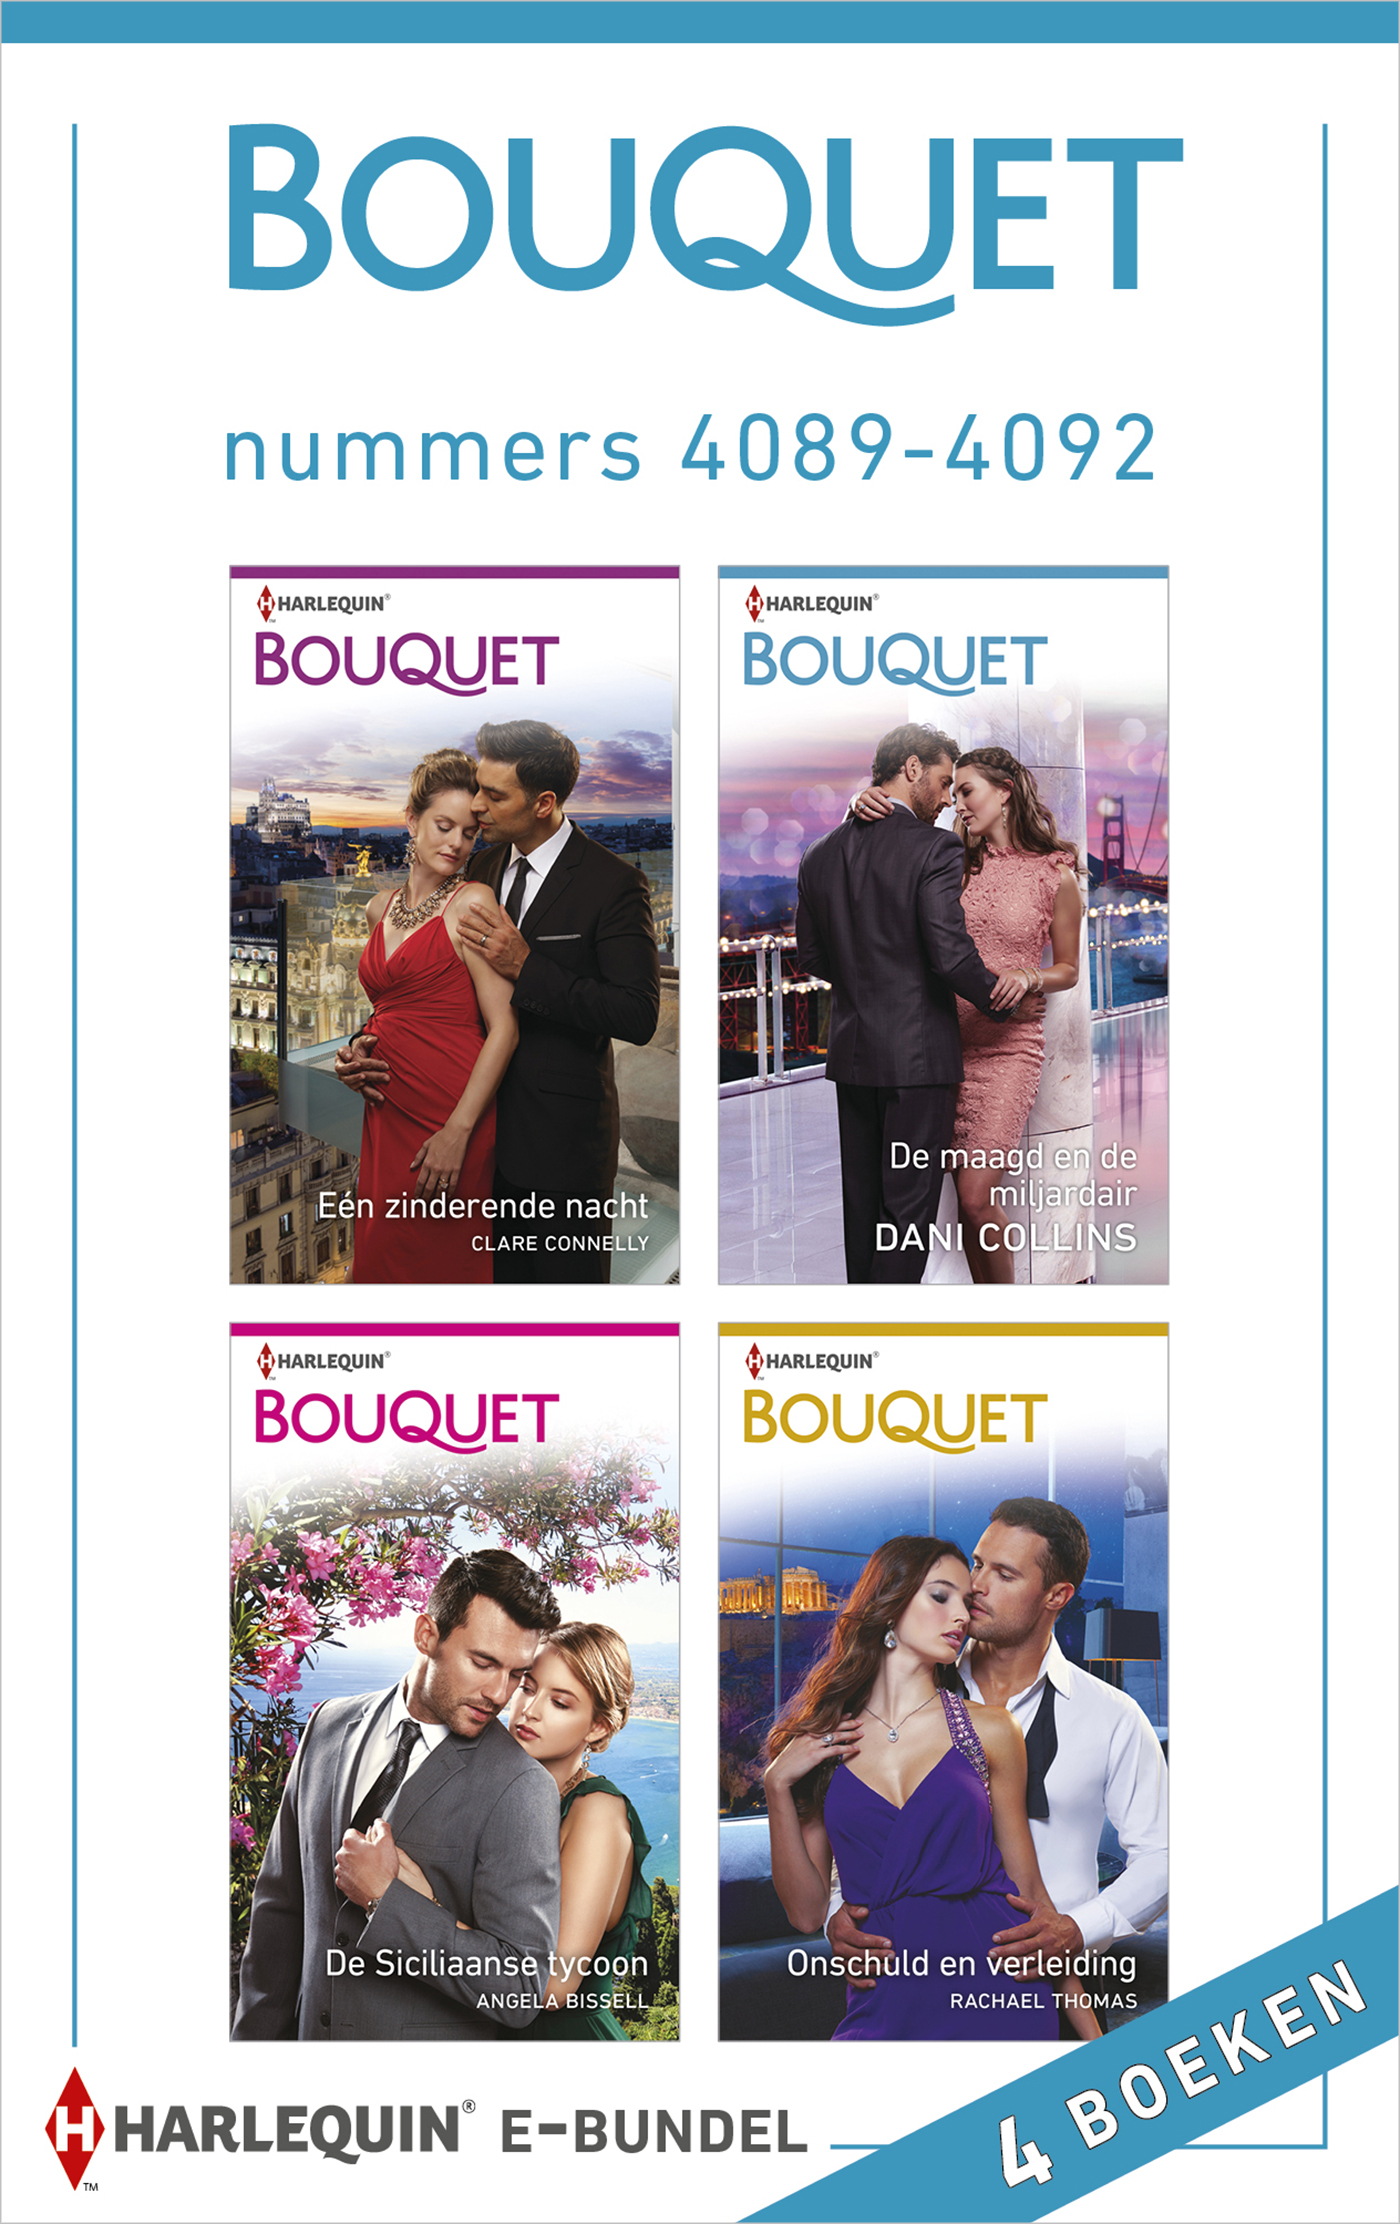 Bouquet e-bundel nummers 4089 - 4092